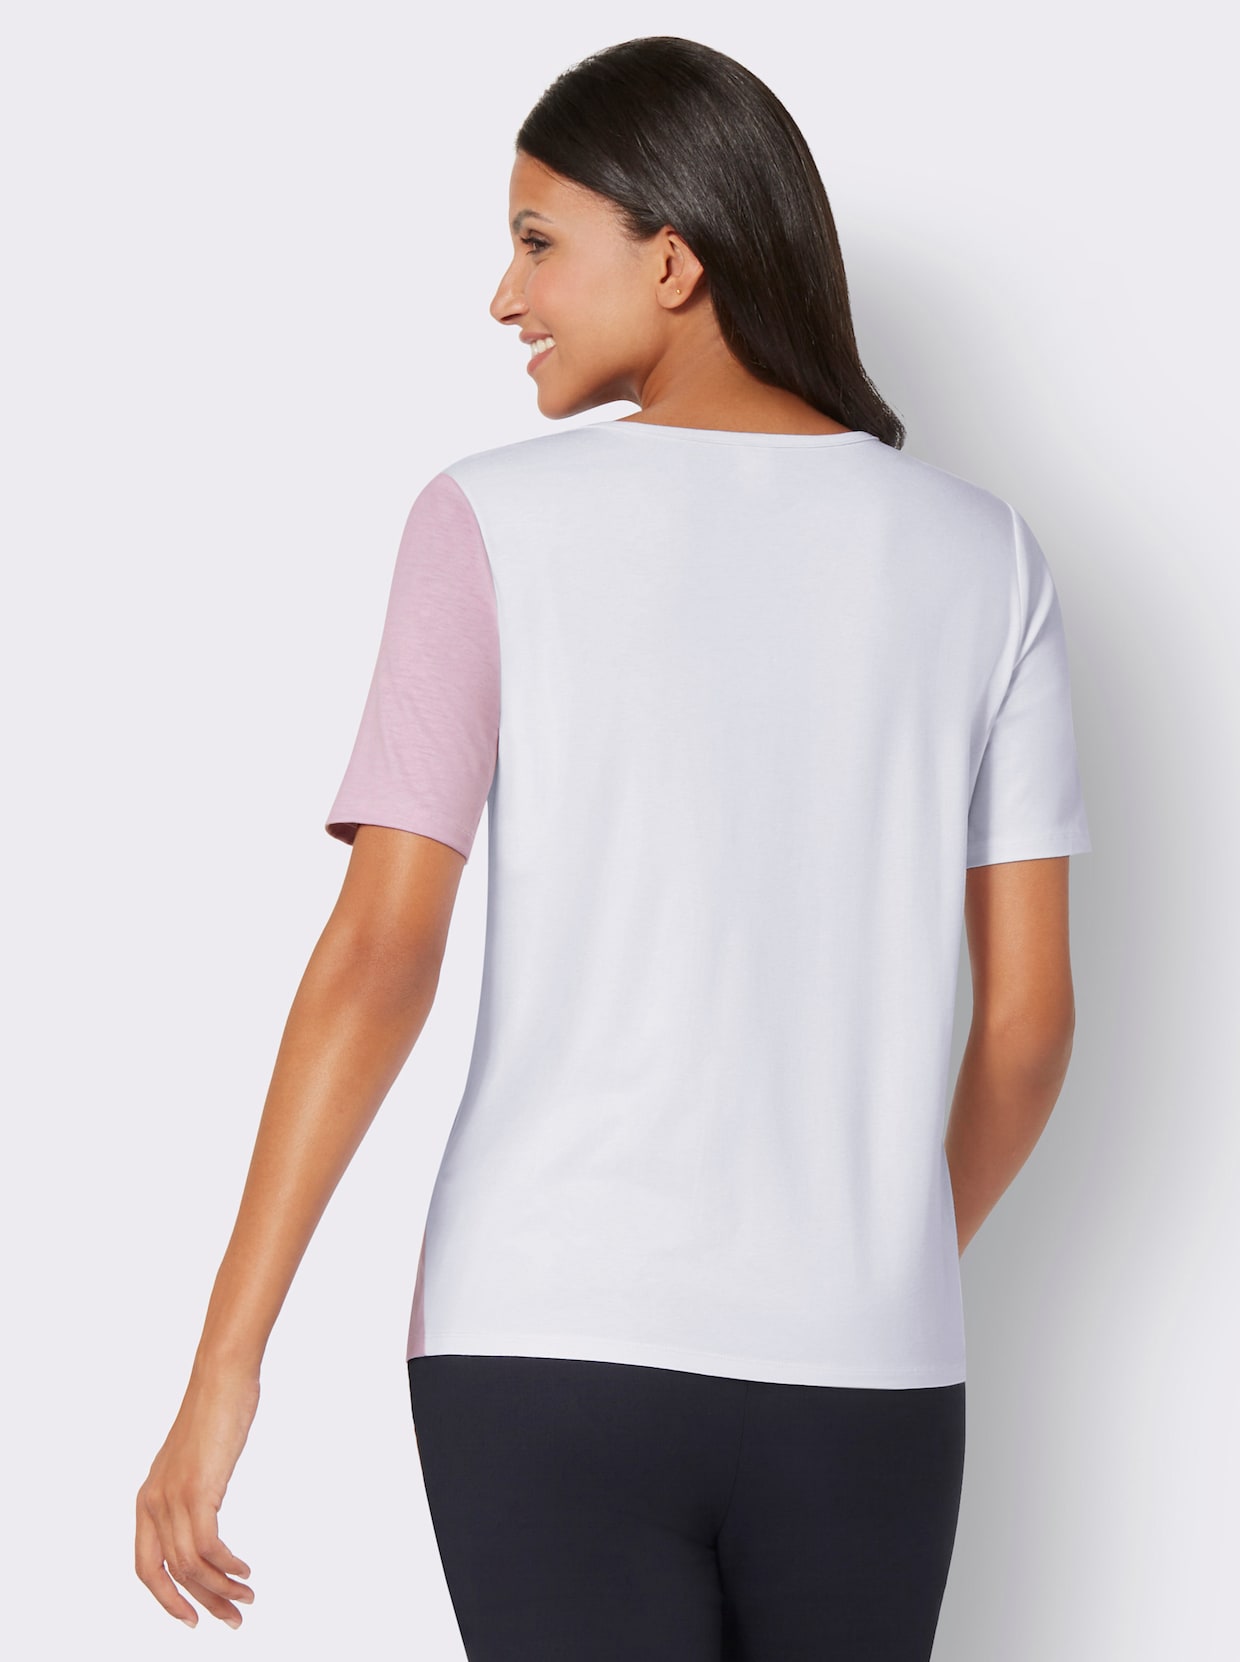 Tričko s V-výstrihom - svetloružovo-biela